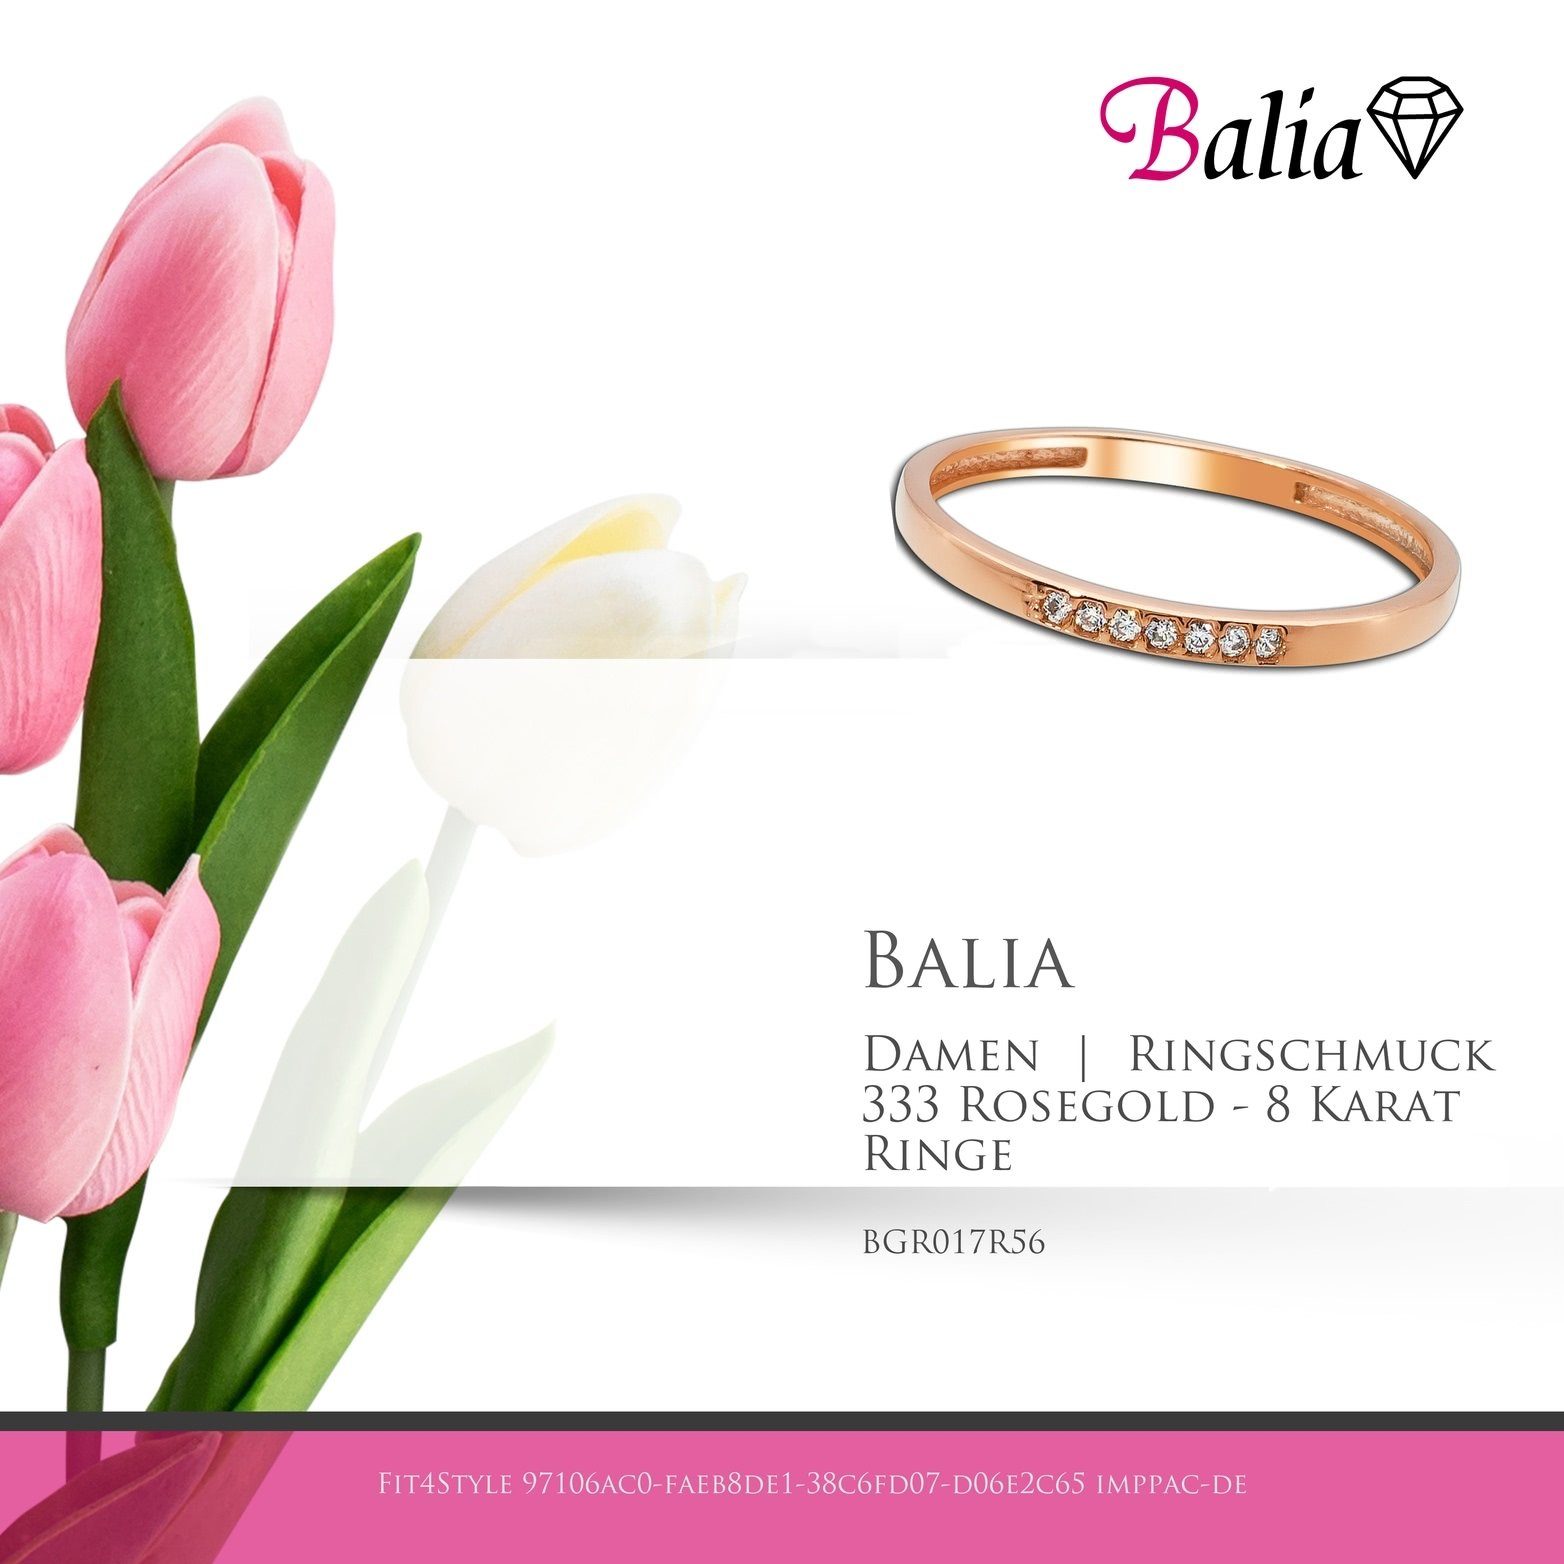 Balia Goldring Balia Ring 333 Rosegold rose) 333 Karat (7 Zirkonias Größe 8 - (Fingerring), Damen Blatt Rosegold (17,8), Fingerring 56